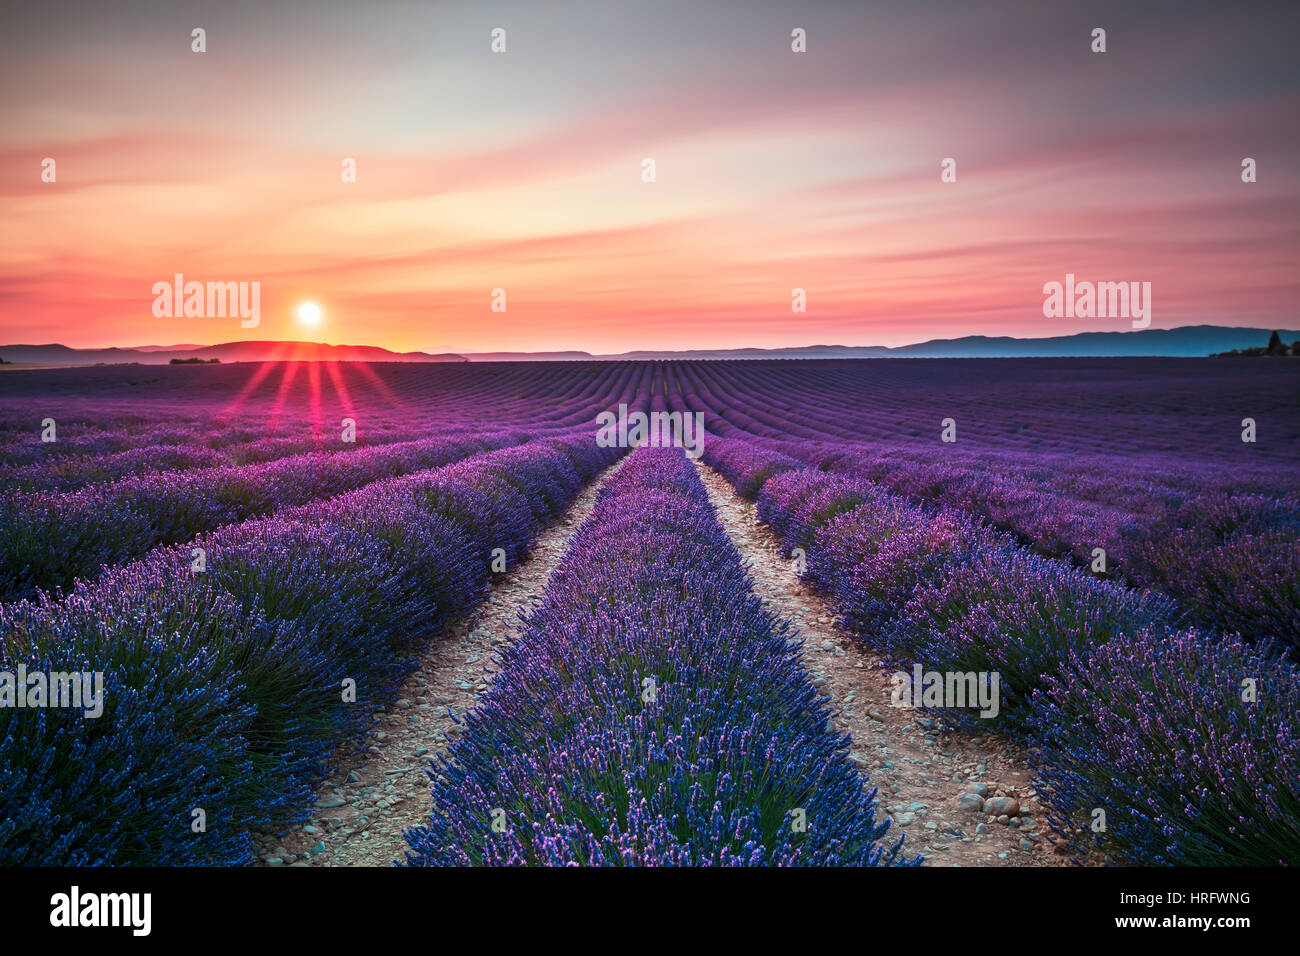 Blume, Lavendel duftenden Felder in endlosen Reihen am Sonnenuntergang. Plateau von Valensole, Provence, Frankreich. Stockfoto